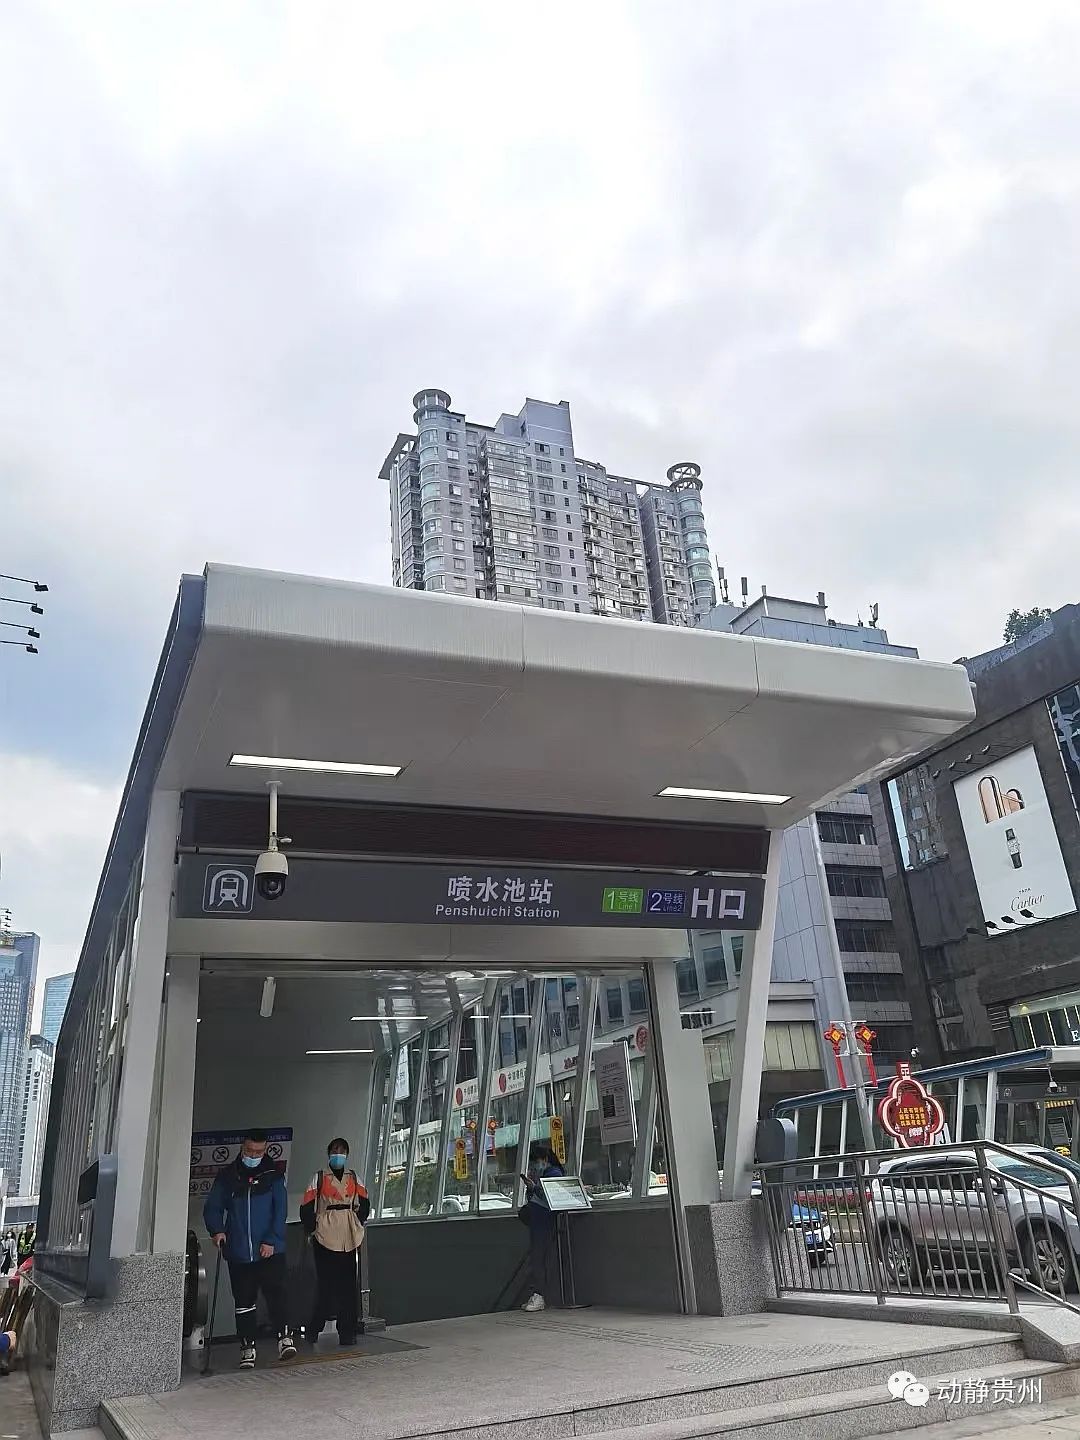 贵阳地铁2号线站点美图来了,你家在哪站?